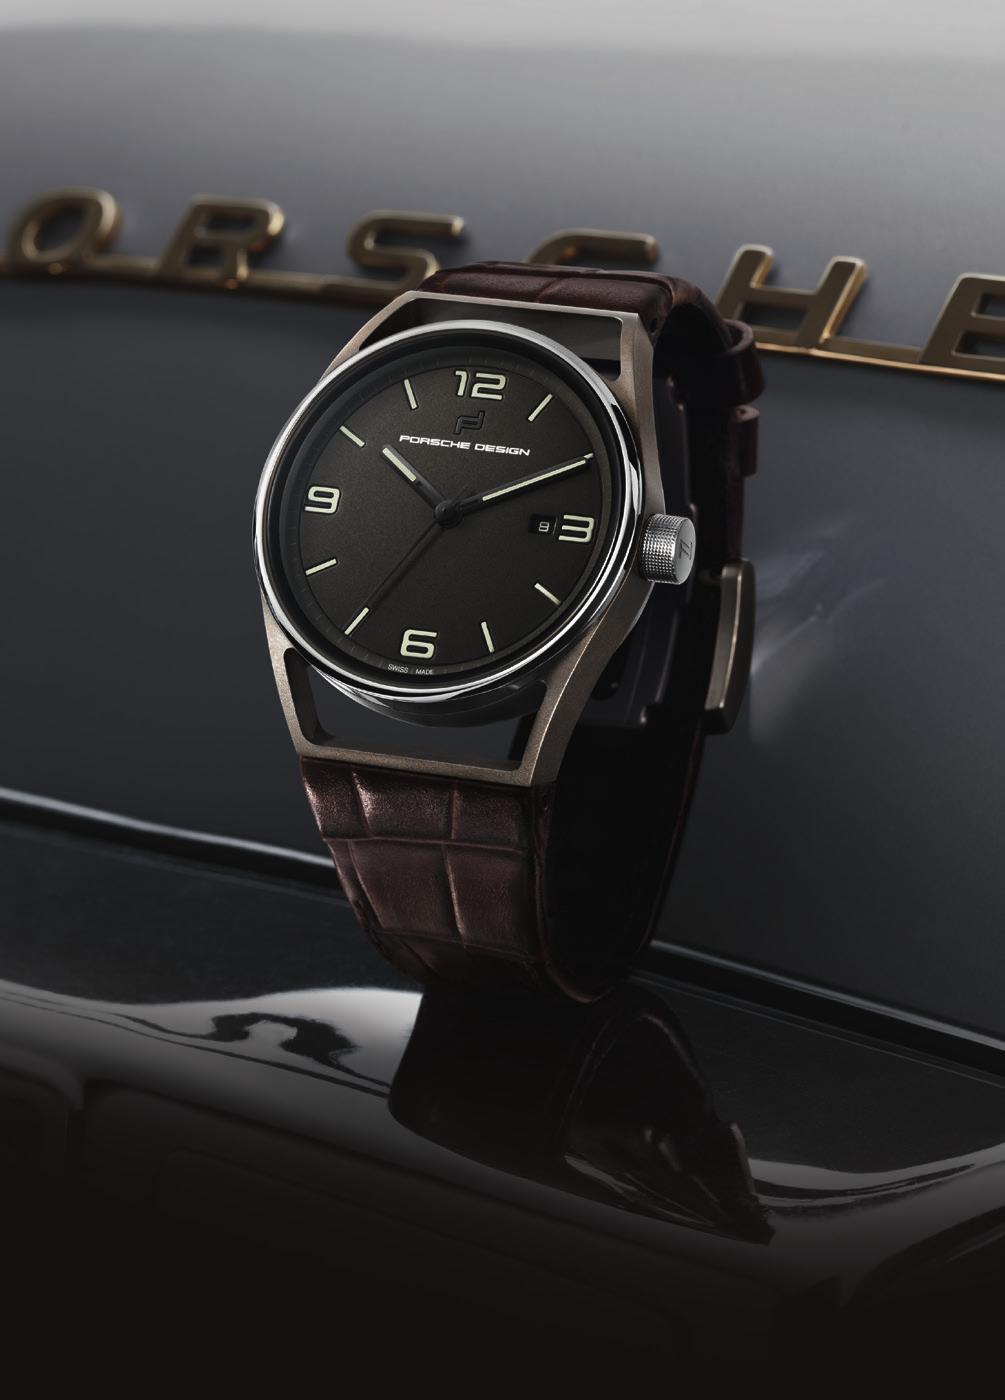 Porsche Design Timepieces 1919 DATETIMER ETERNITY Edles Alligatorenleder und gebräuntes Titan. Zeitlose Eleganz, inspiriert von Bauhaus Architektur und Design. Designed by Studio F. A. Porsche.